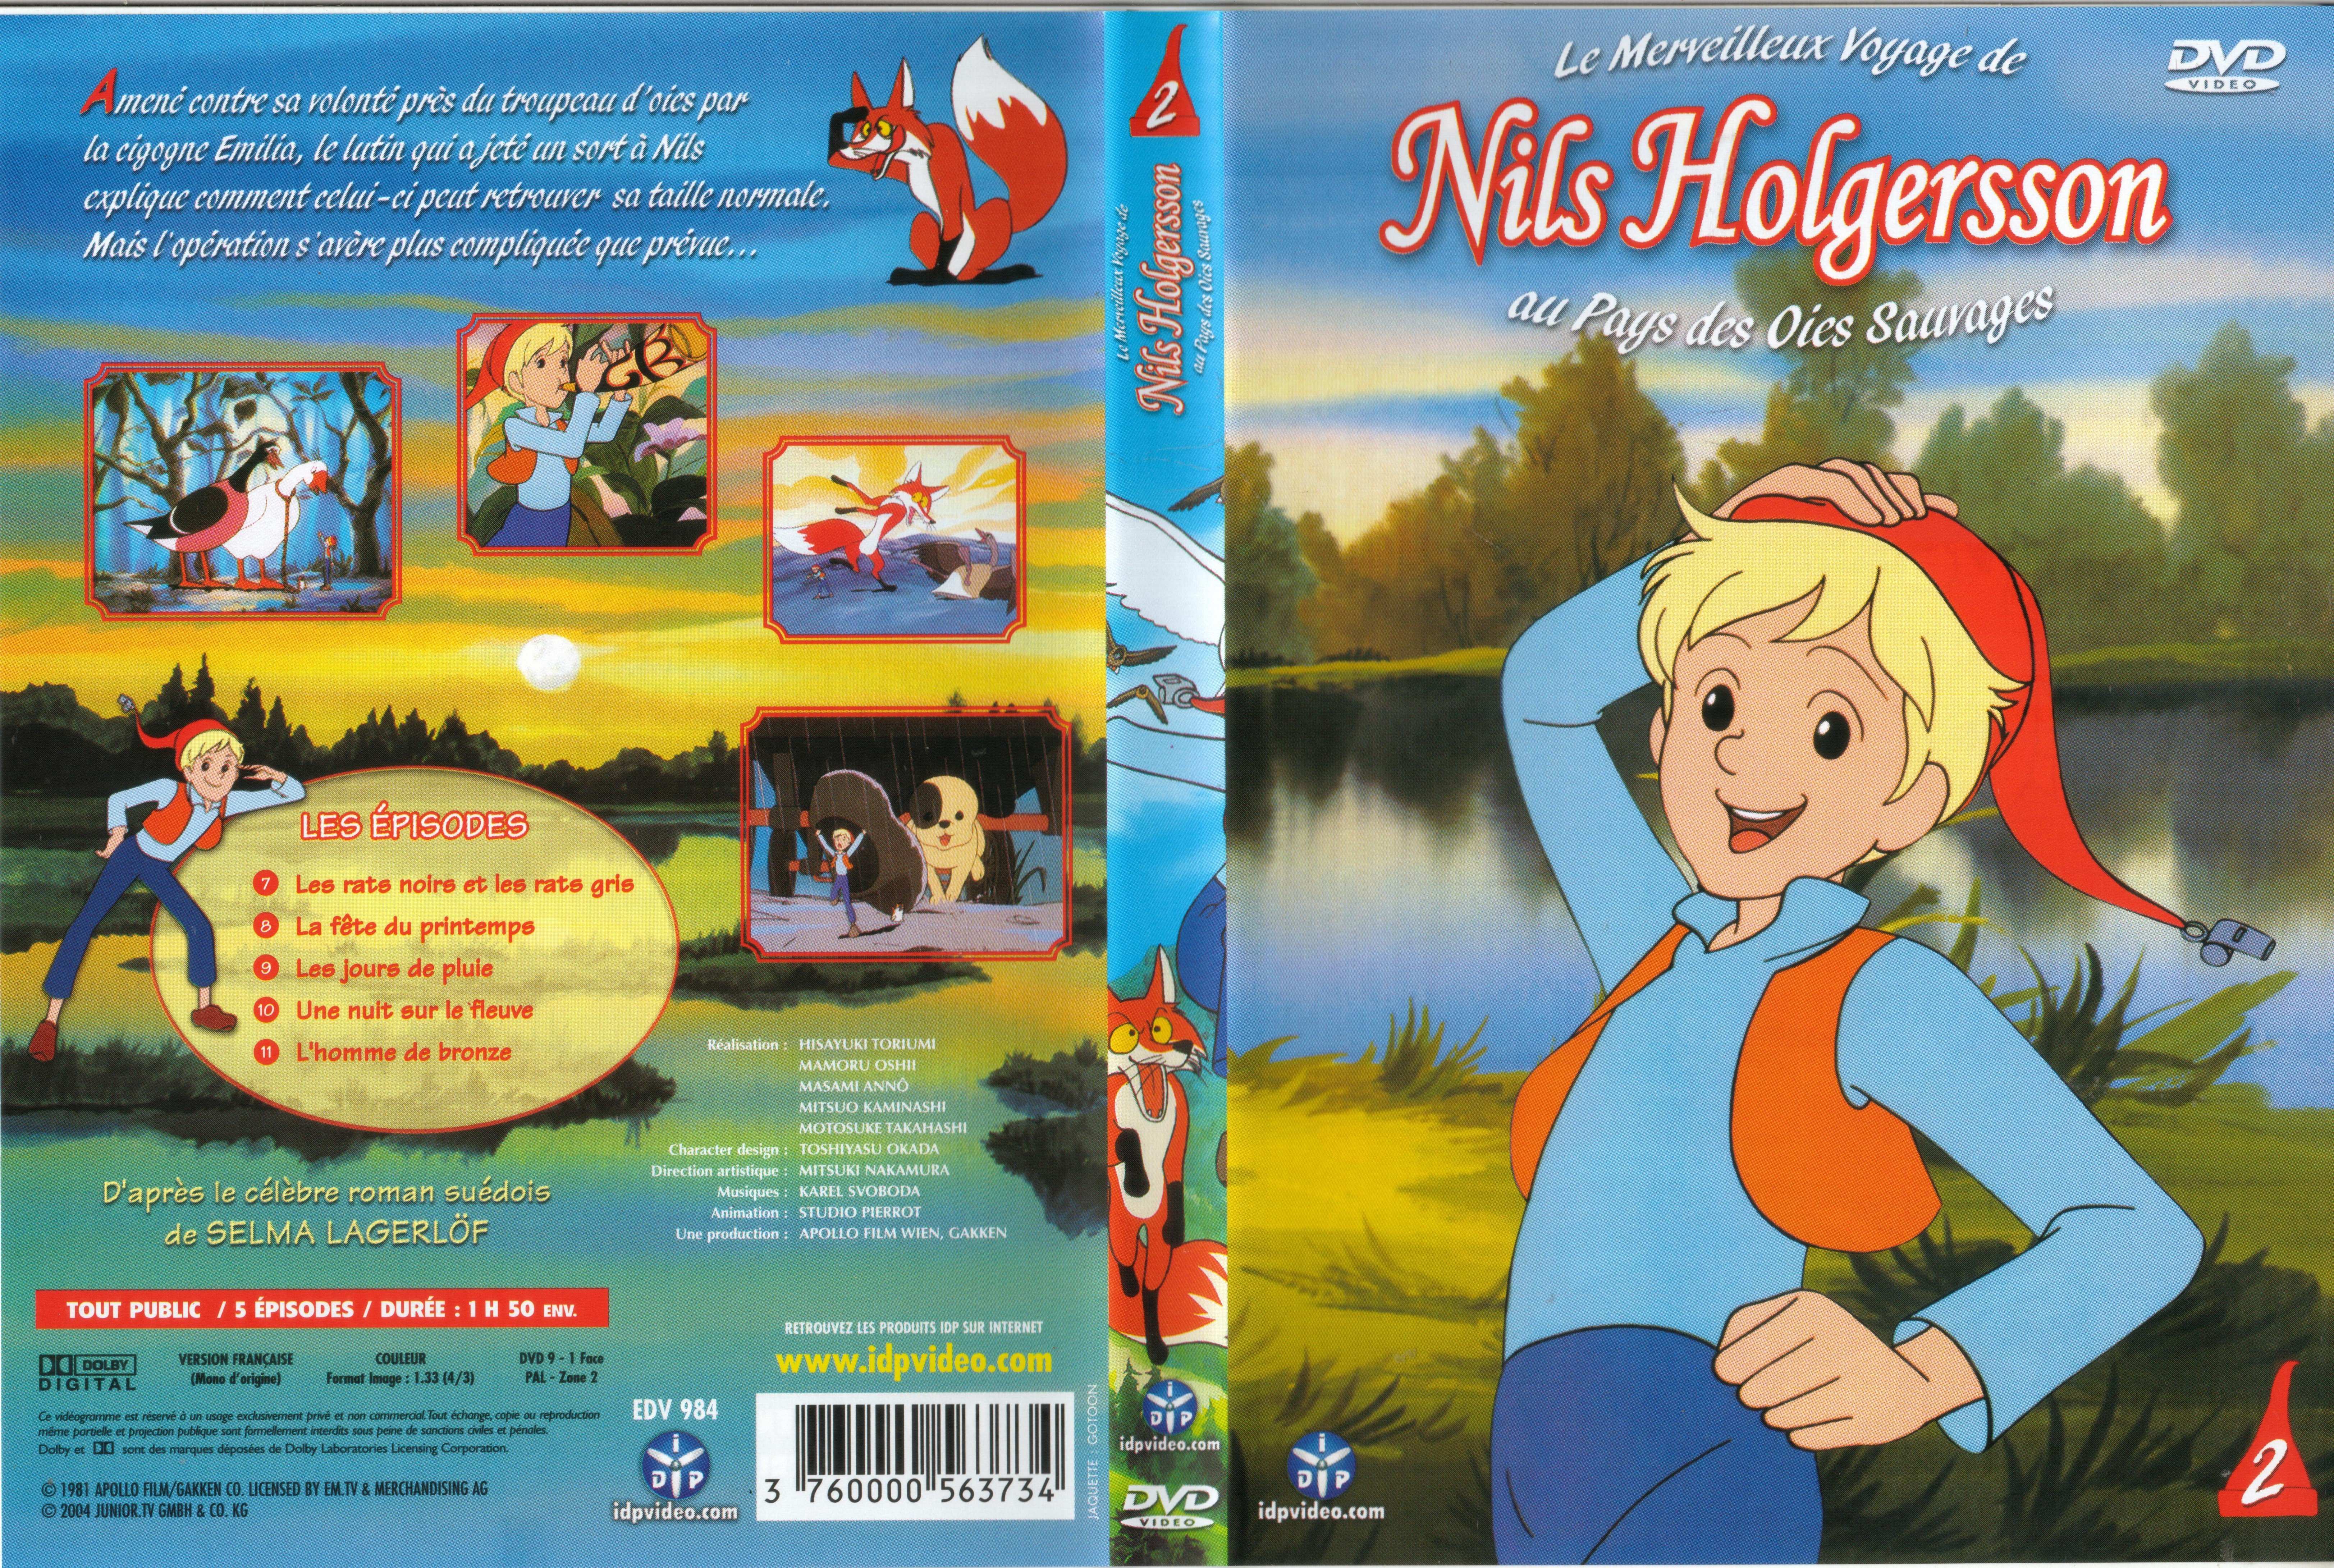 Jaquette DVD Nils Holgersson vol 02